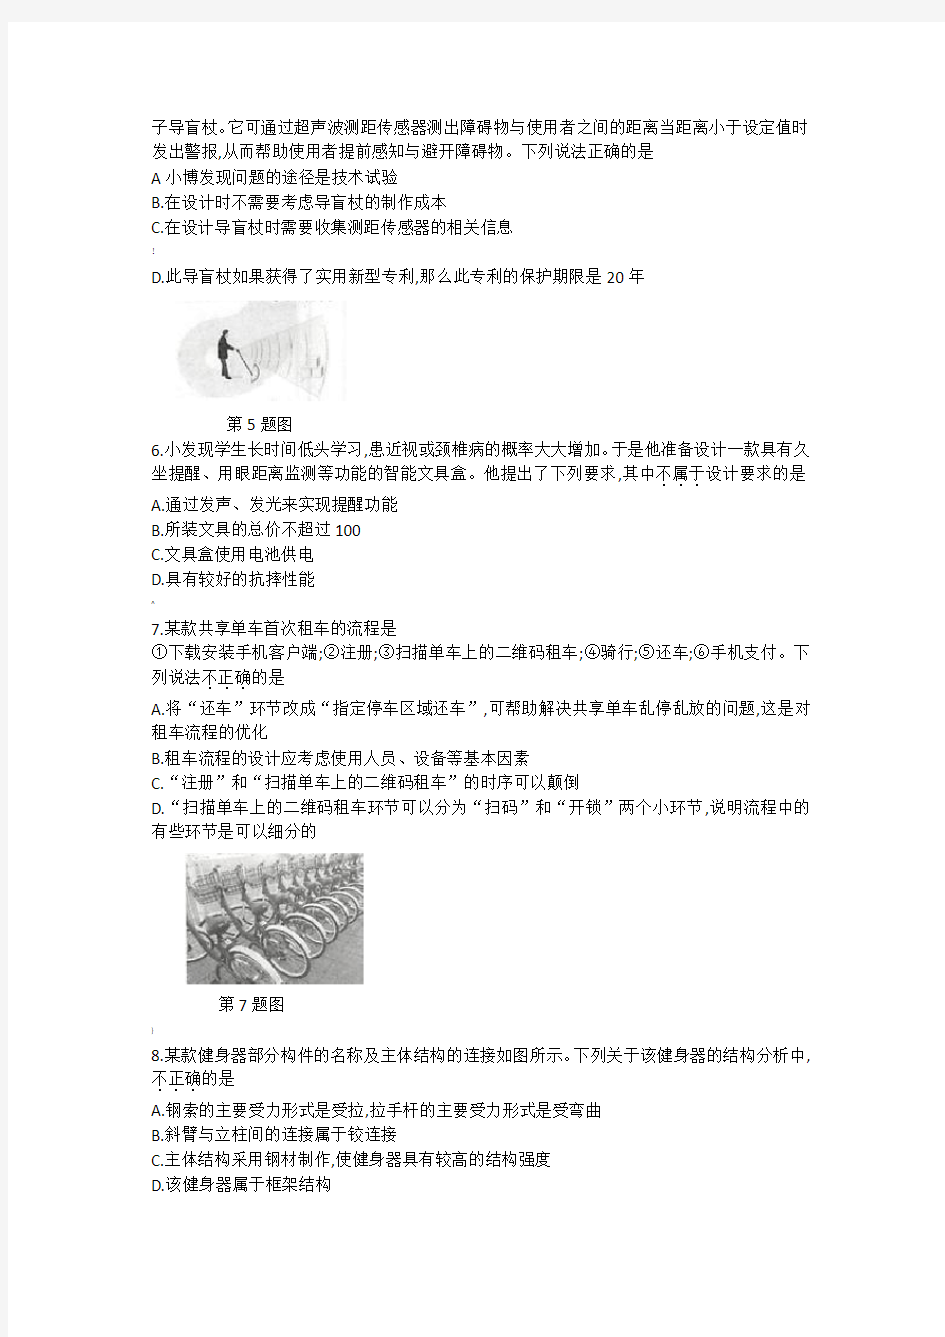 2019年江西省普通高考《通用技术》真题试卷(后附答案)